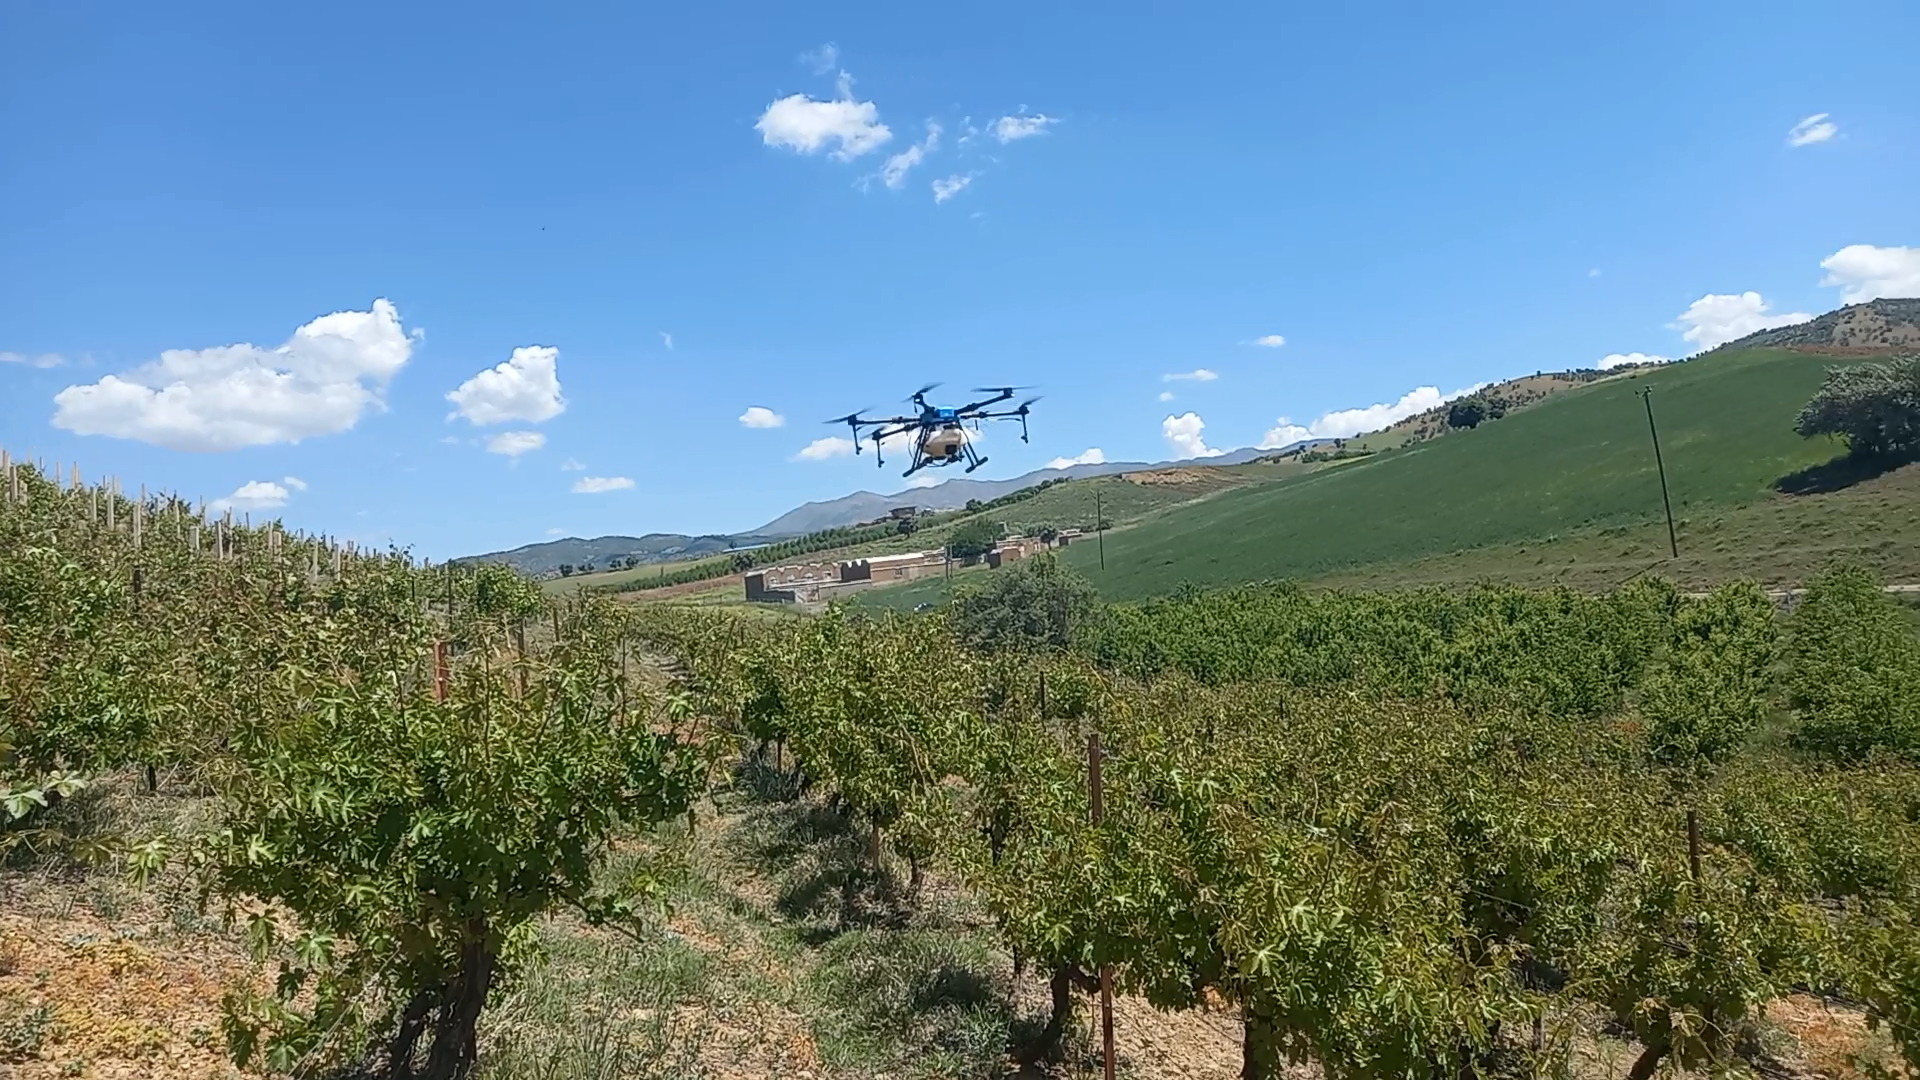 پهپاد سمپاش تیام 10 - مزرعه انگور
EFT E610 drone - پهباد سم پاش اوجیران
پهپاد سمپاش - پهباد سمپاش - پهپاد سم پاش - سمپاشی با پهپادهای عمود پرواز کواد تیارا - اوجیران - اوج آسمان زاگرس - خرید پهپاد کشاورزی - فروش پهپاد کشاورزی
مزایای سمپاشی با پهپاد نسبت به سمپاشی سنتی با تراکتور یا دستی